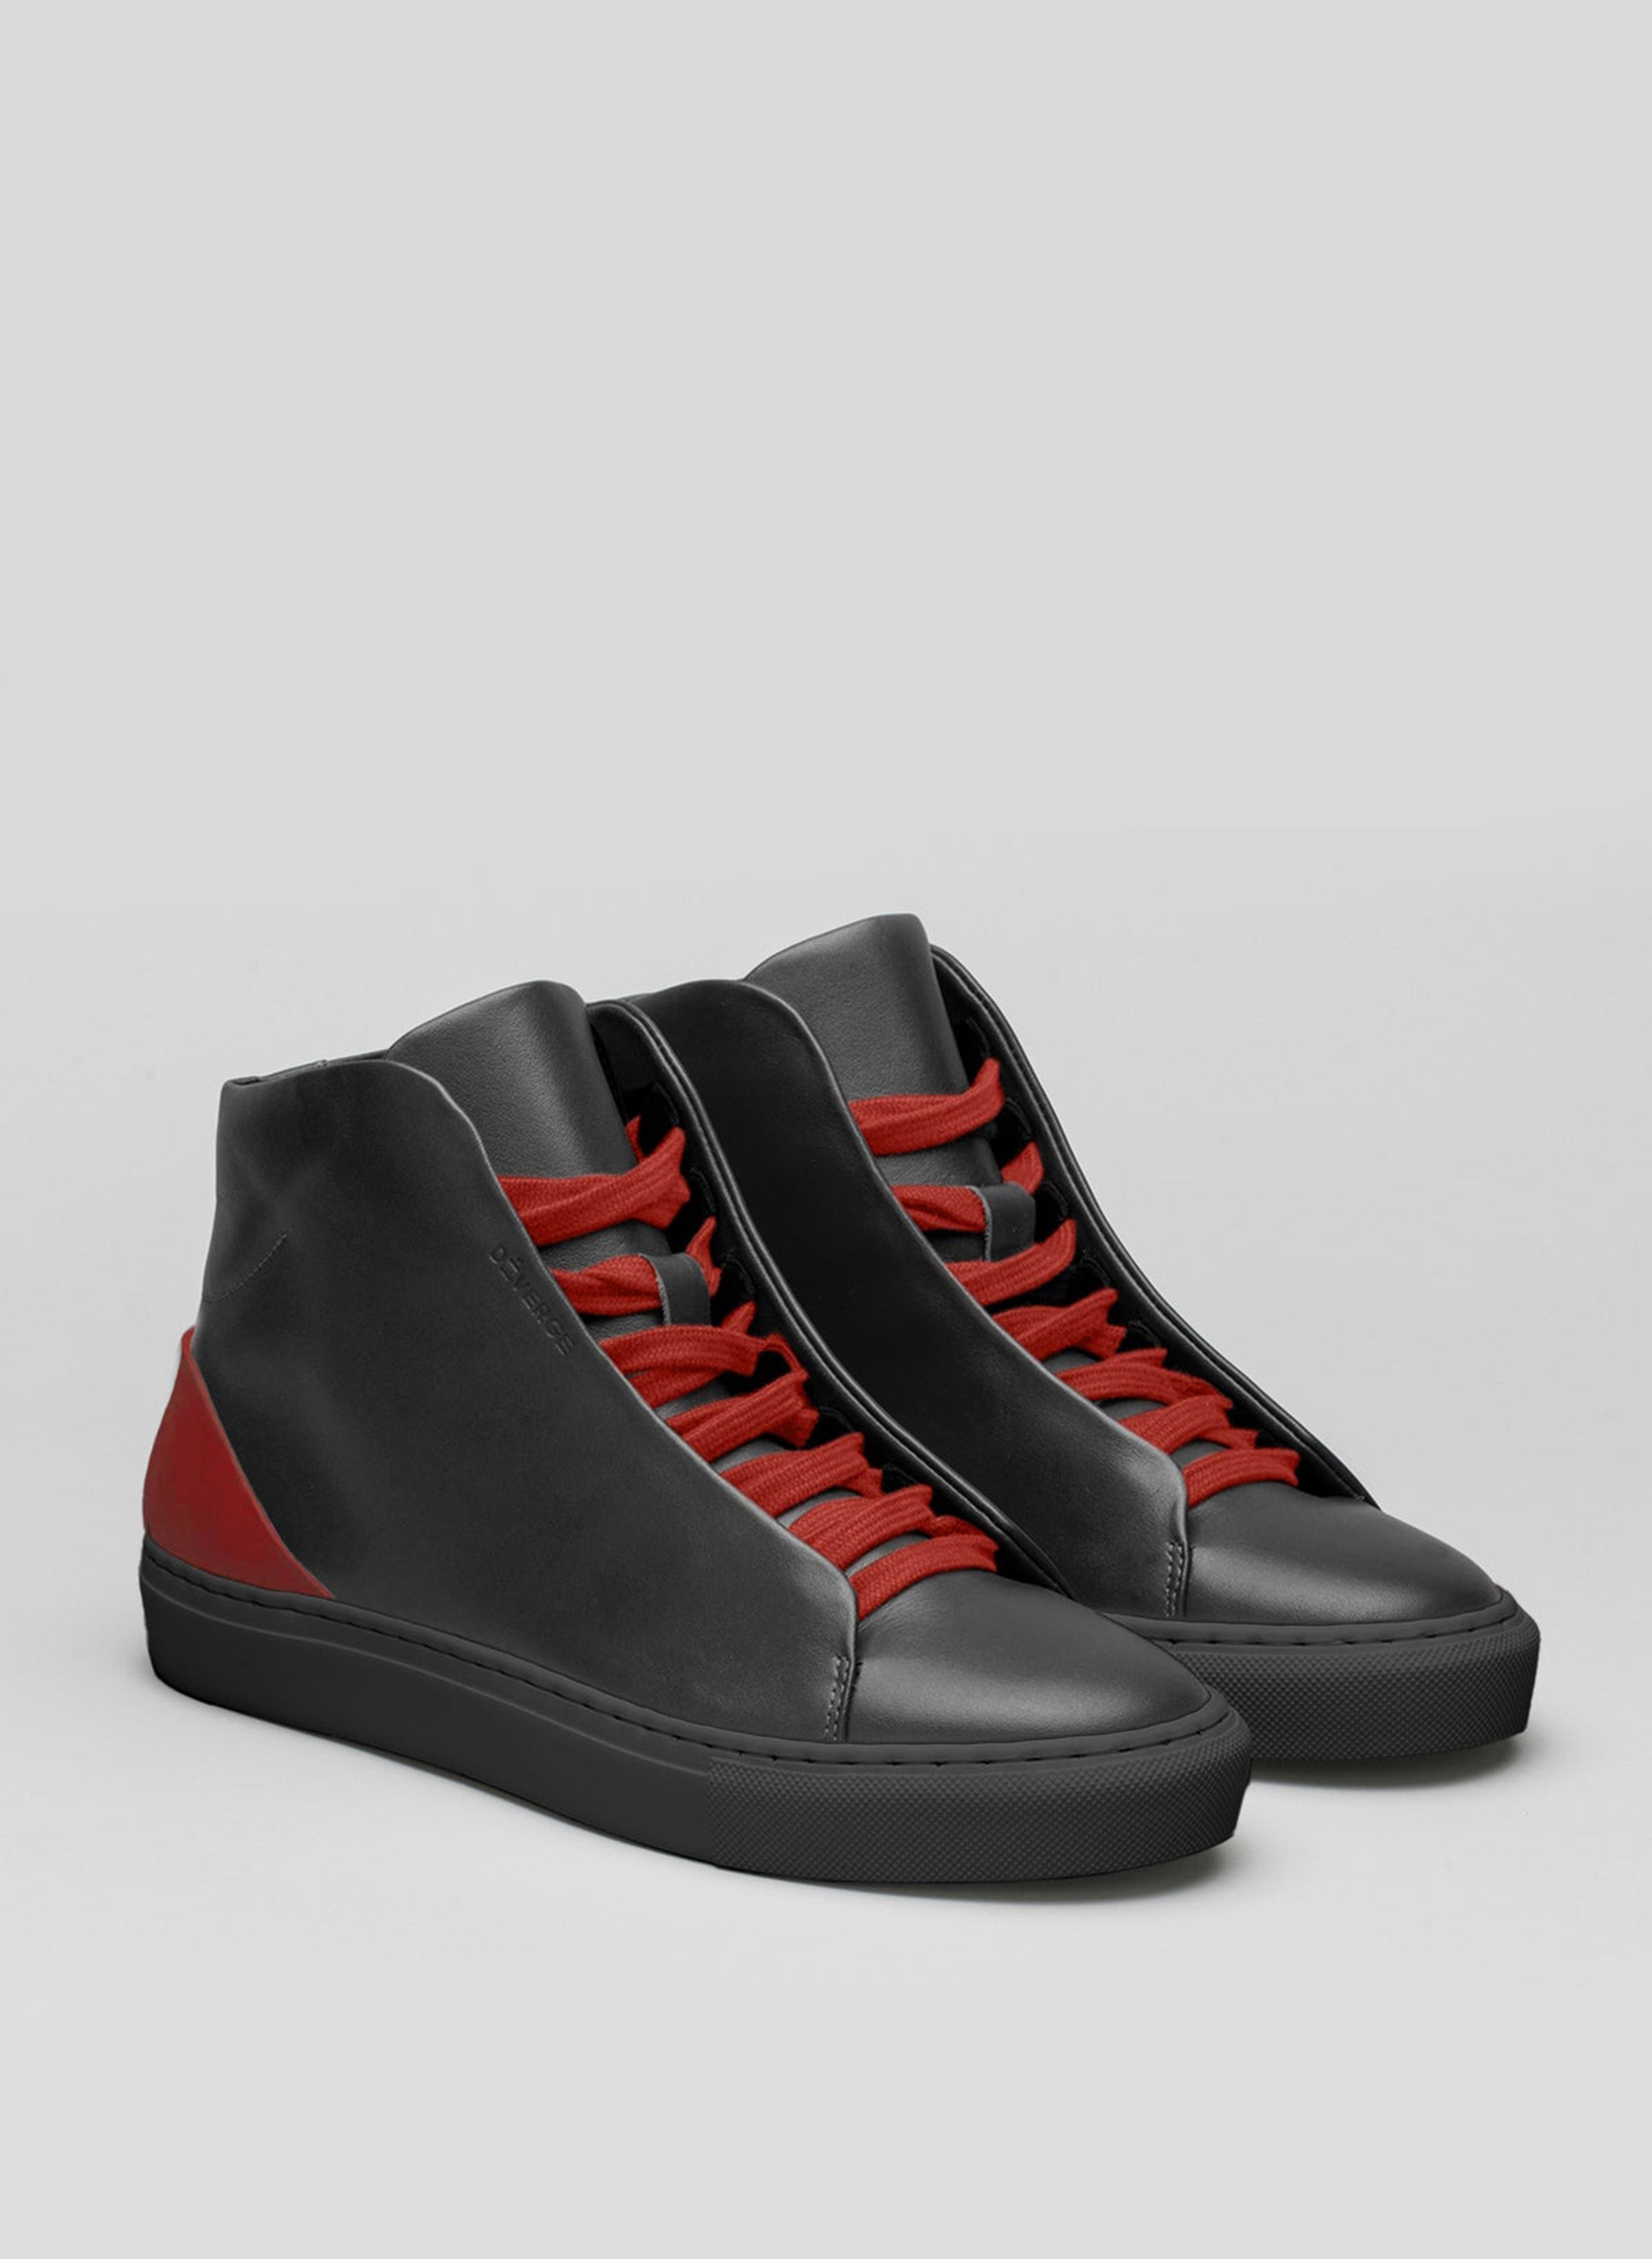 Une paire de chaussures noires sneakers avec des lacets rouges, pour présenter les chaussures personnalisées de Diverge.